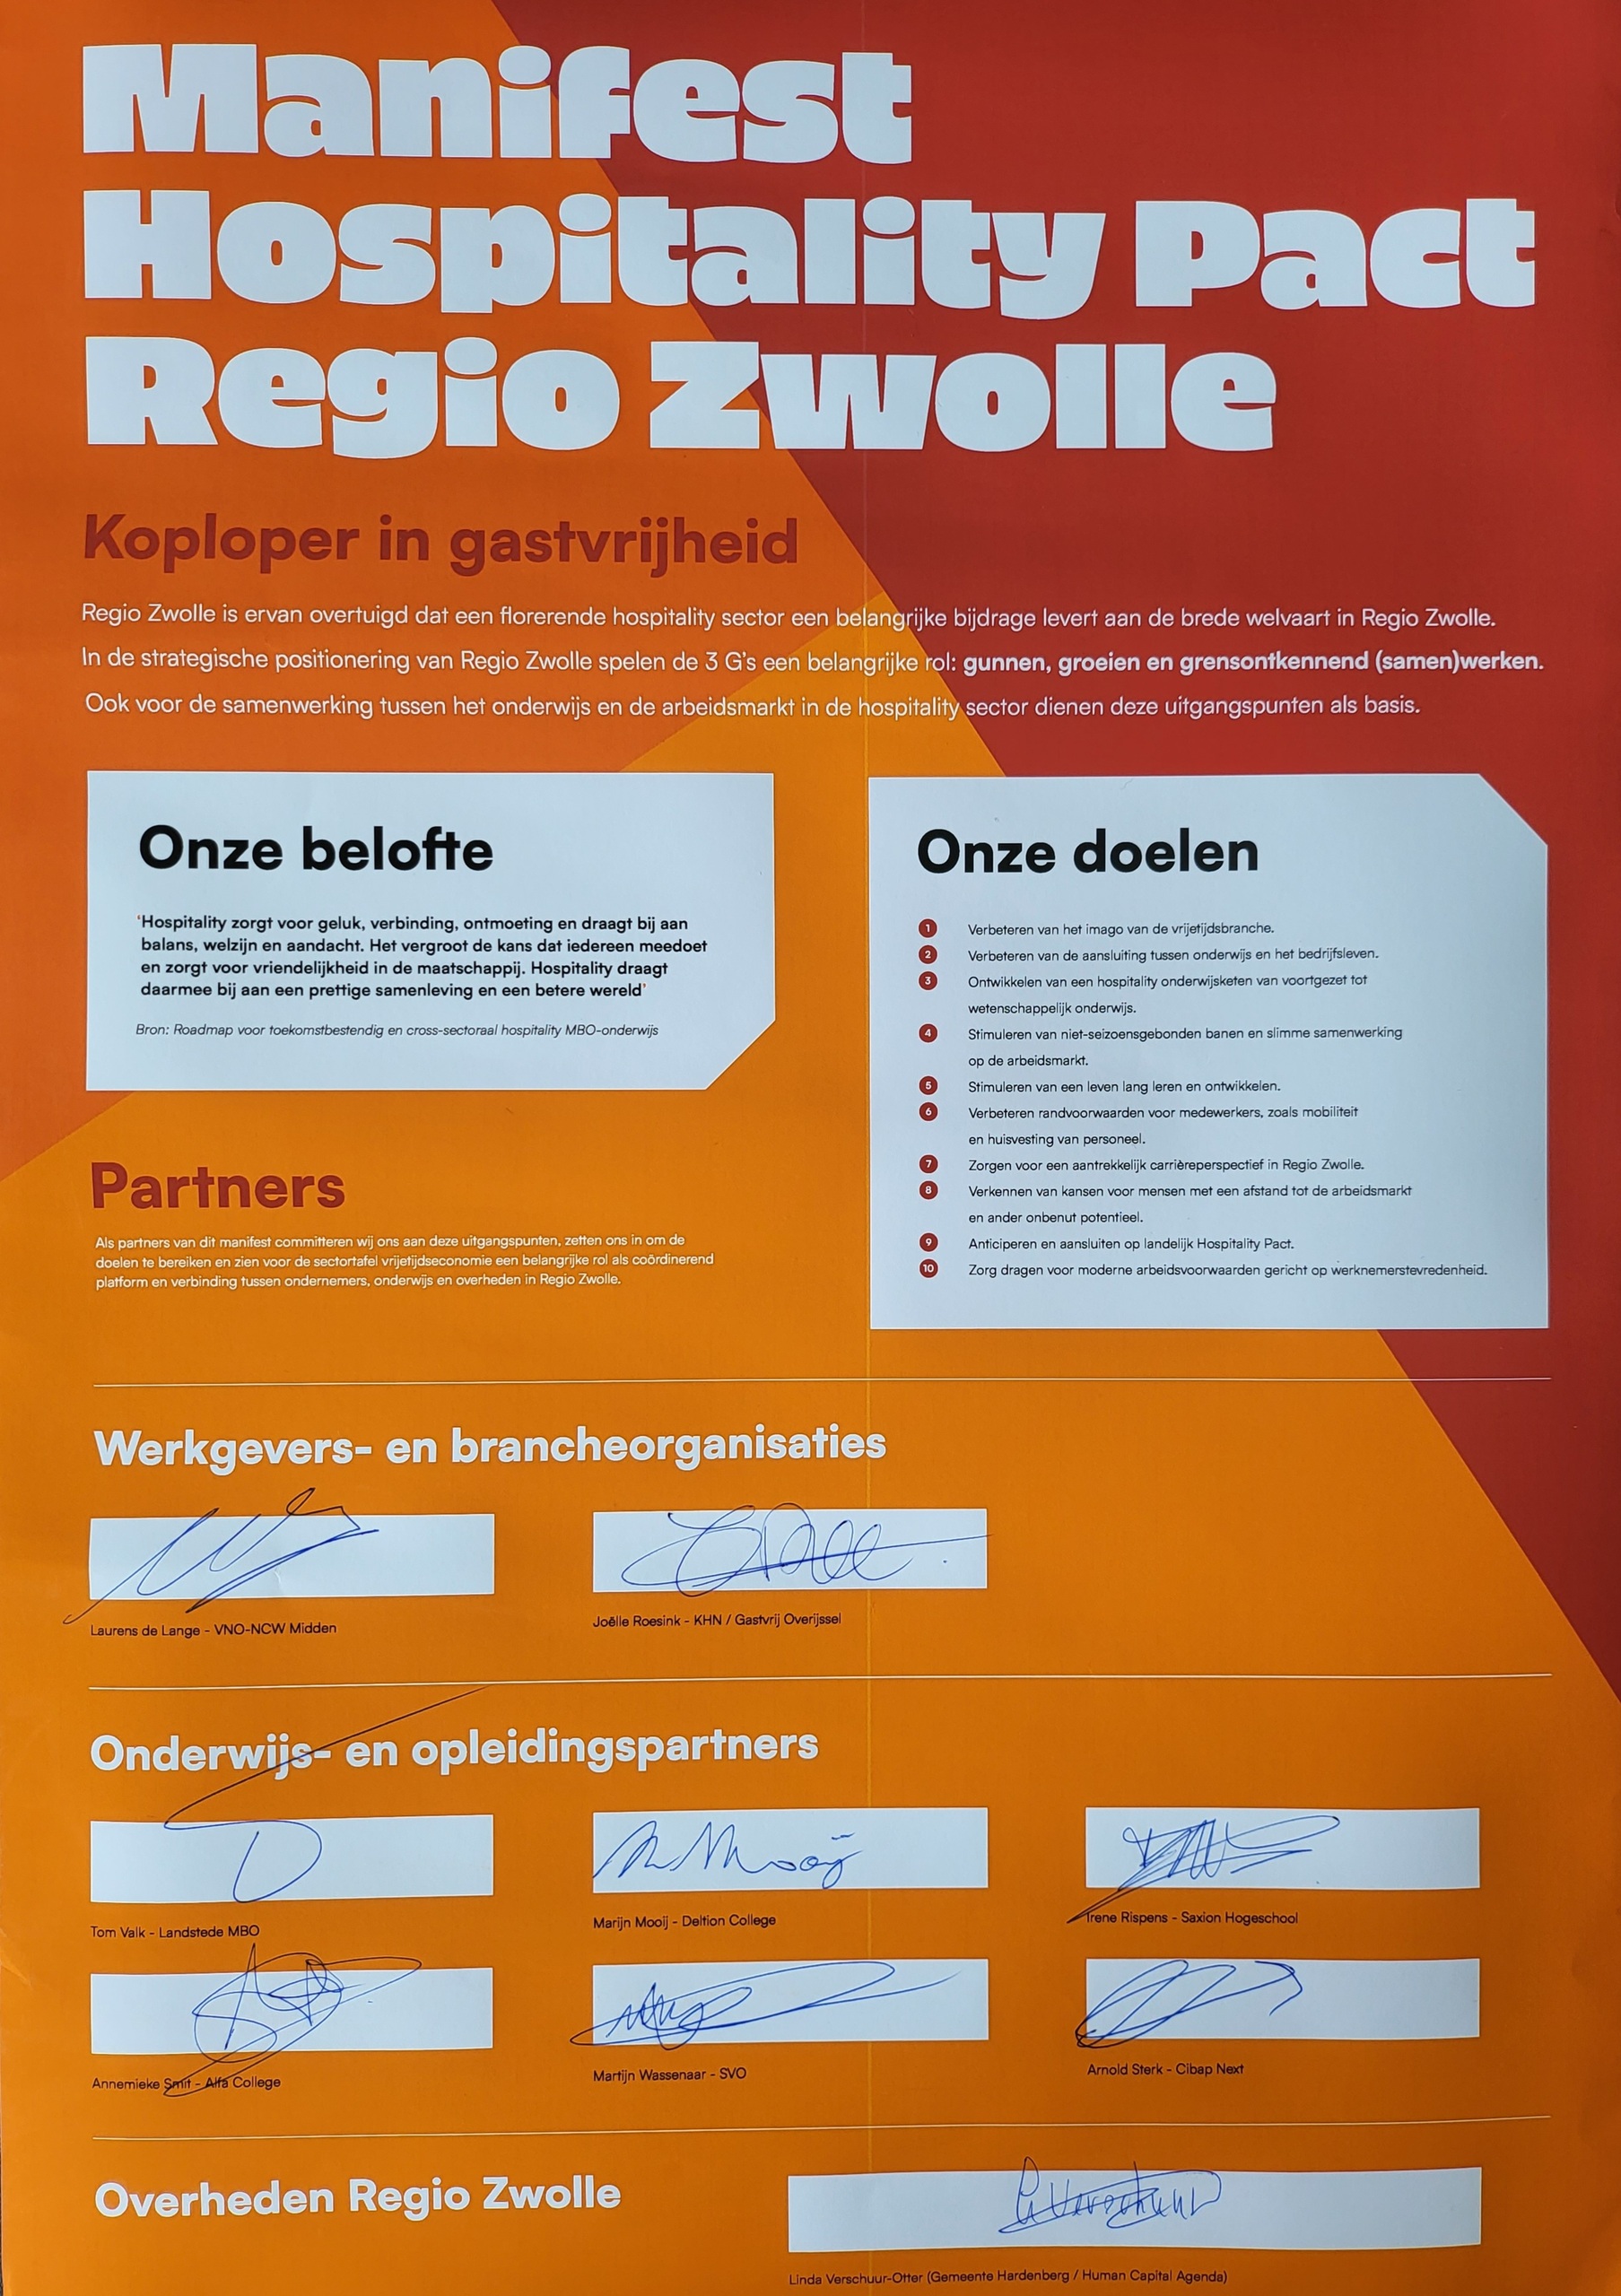 Met Hospitality Pact Regio Zwolle presenteert vrijetijdssector zich als aantrekkelijke werkgever